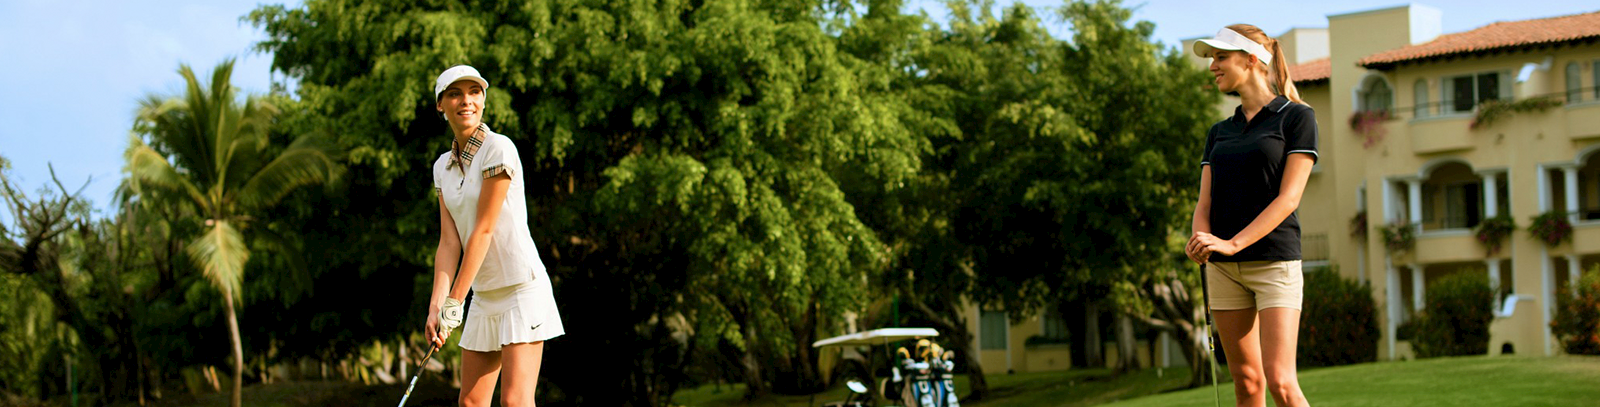 Golf Pro Package at Grand Velas Riviera Nayarit